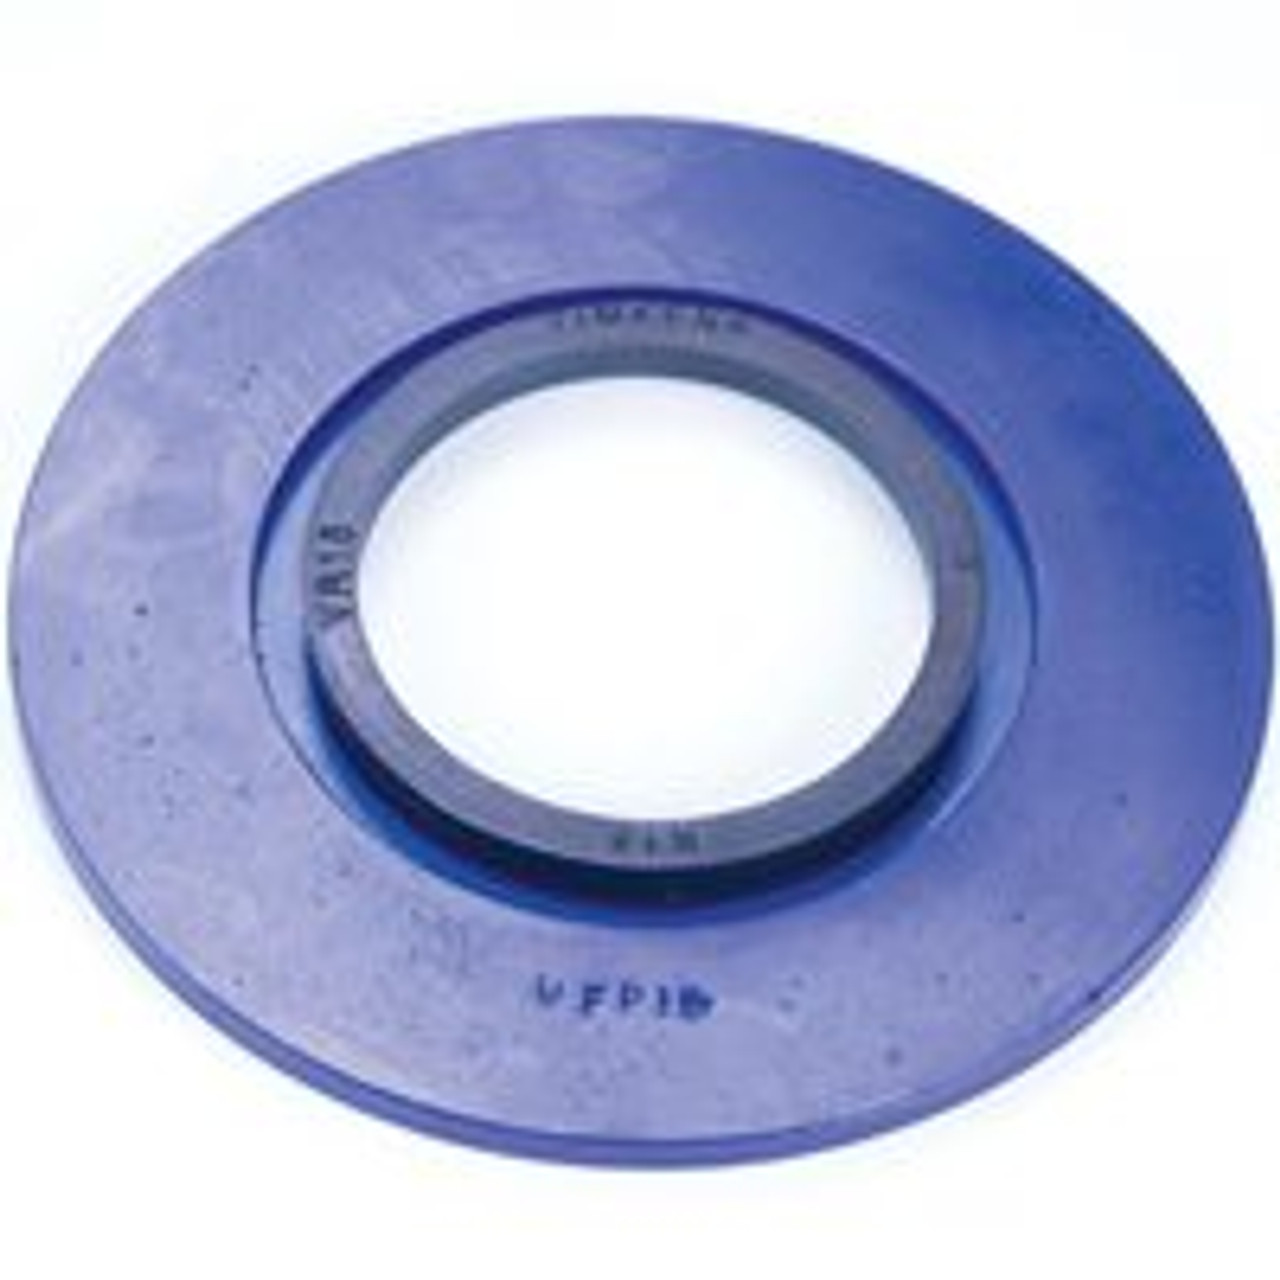 1-7/16" Timken SRB Square Flange Block Backing Plate w/V-Ring  UFP107